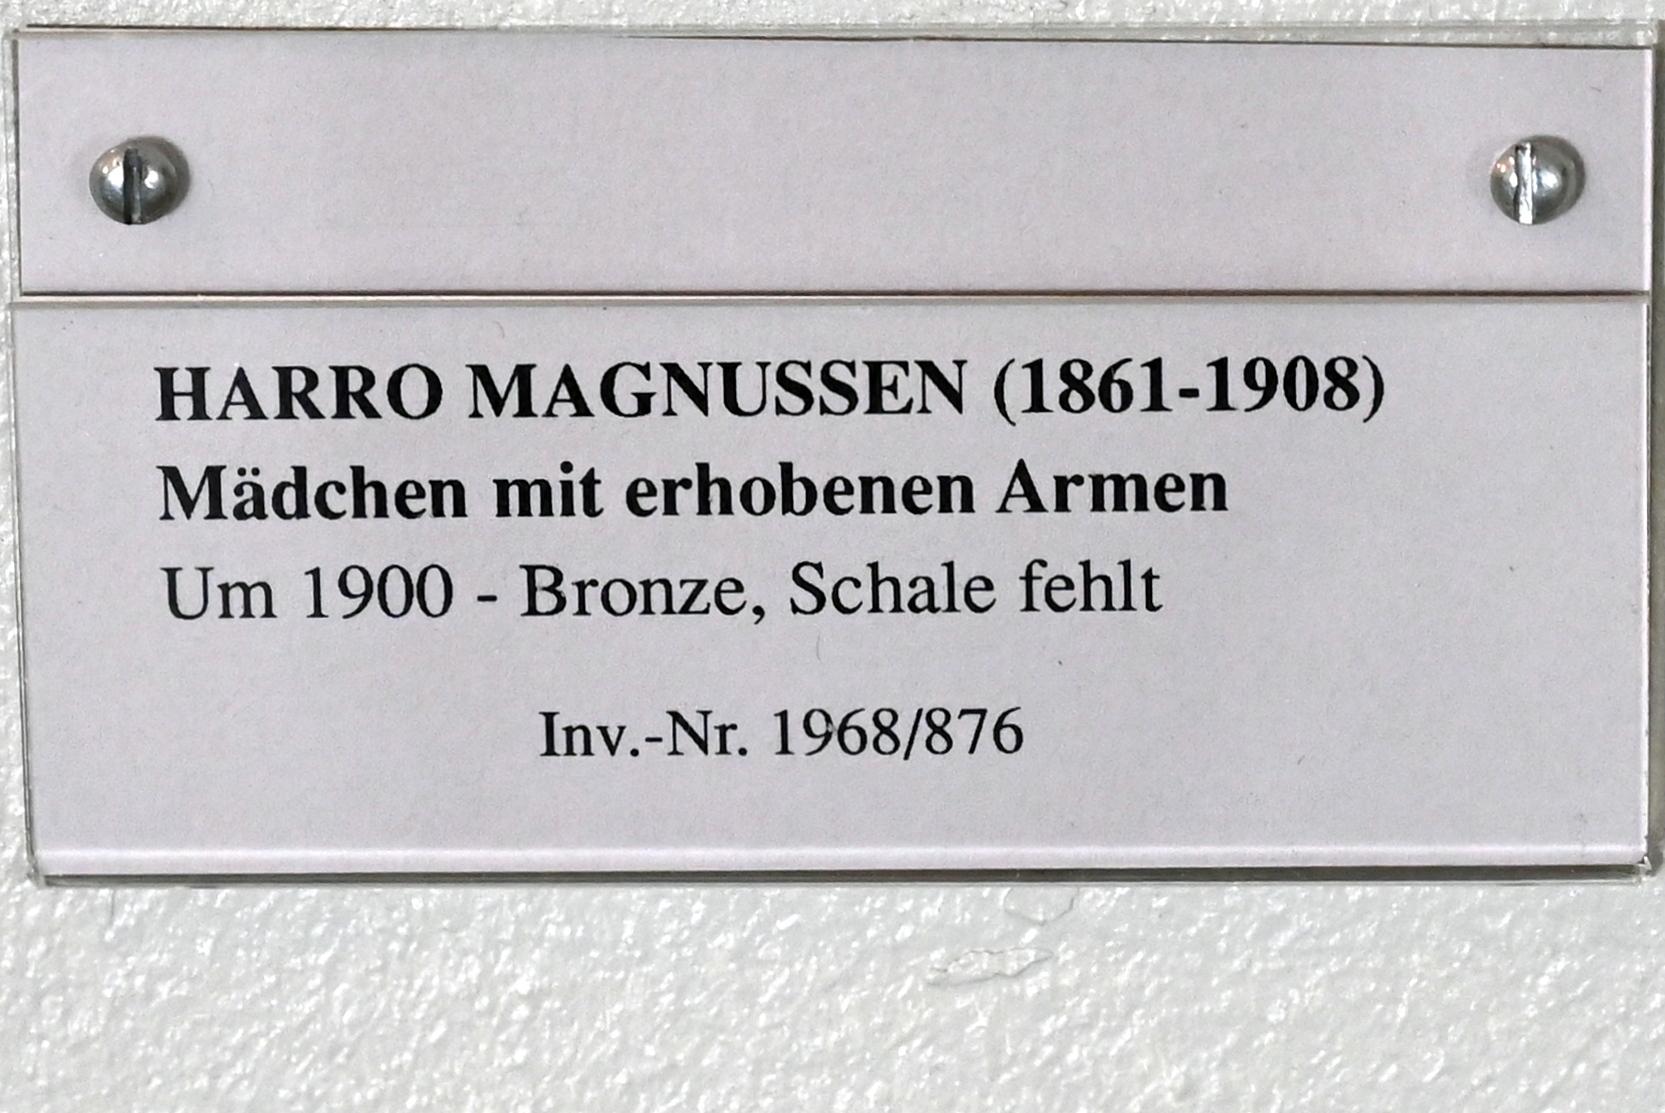 Harro Magnussen (1900), Mädchen mit erhobenen Armen, Schleswig, Landesmuseum für Kunst und Kulturgeschichte, Jugendstil, um 1900, Bild 3/3